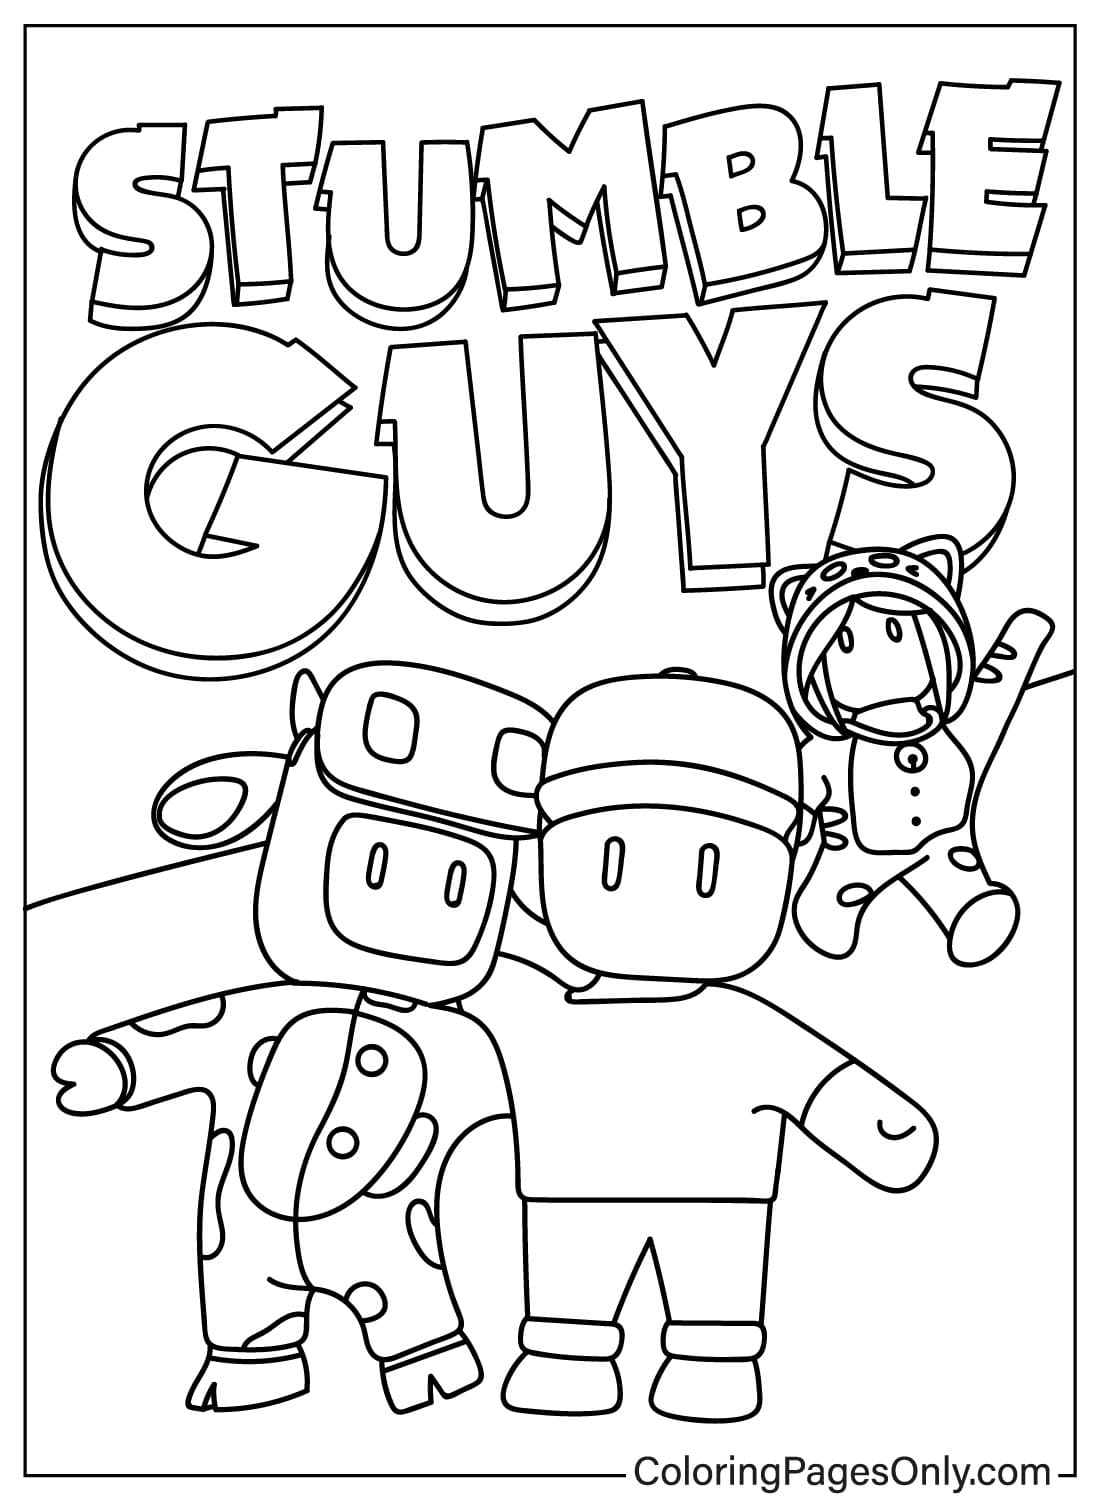 Stumble Guys printbare kleurplaat van Stumble Guys